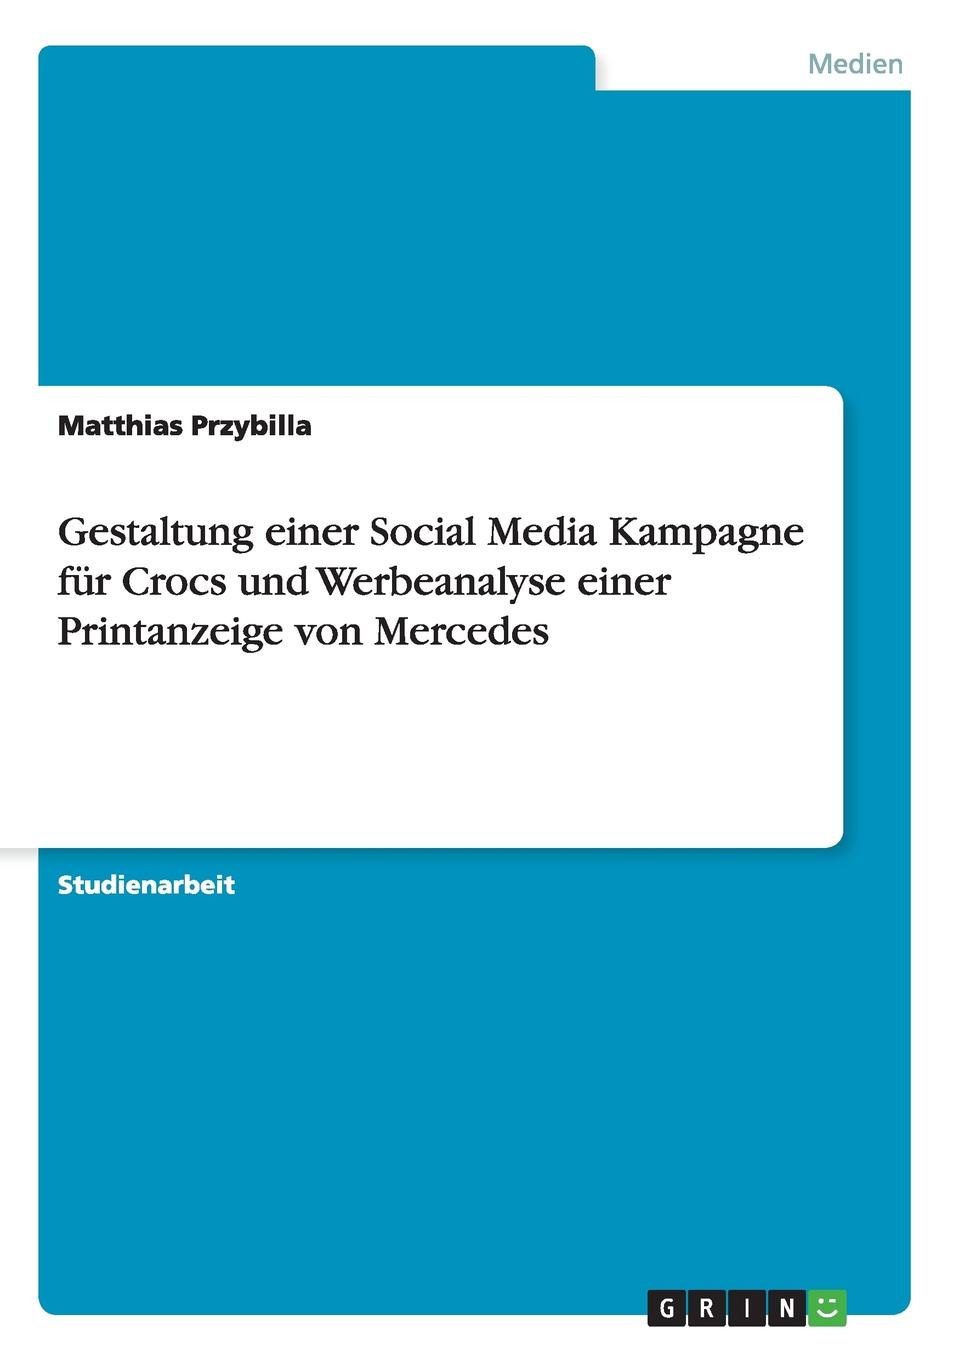 Gestaltung einer Social Media Kampagne fur Crocs und Werbeanalyse einer Printanzeige von Mercedes